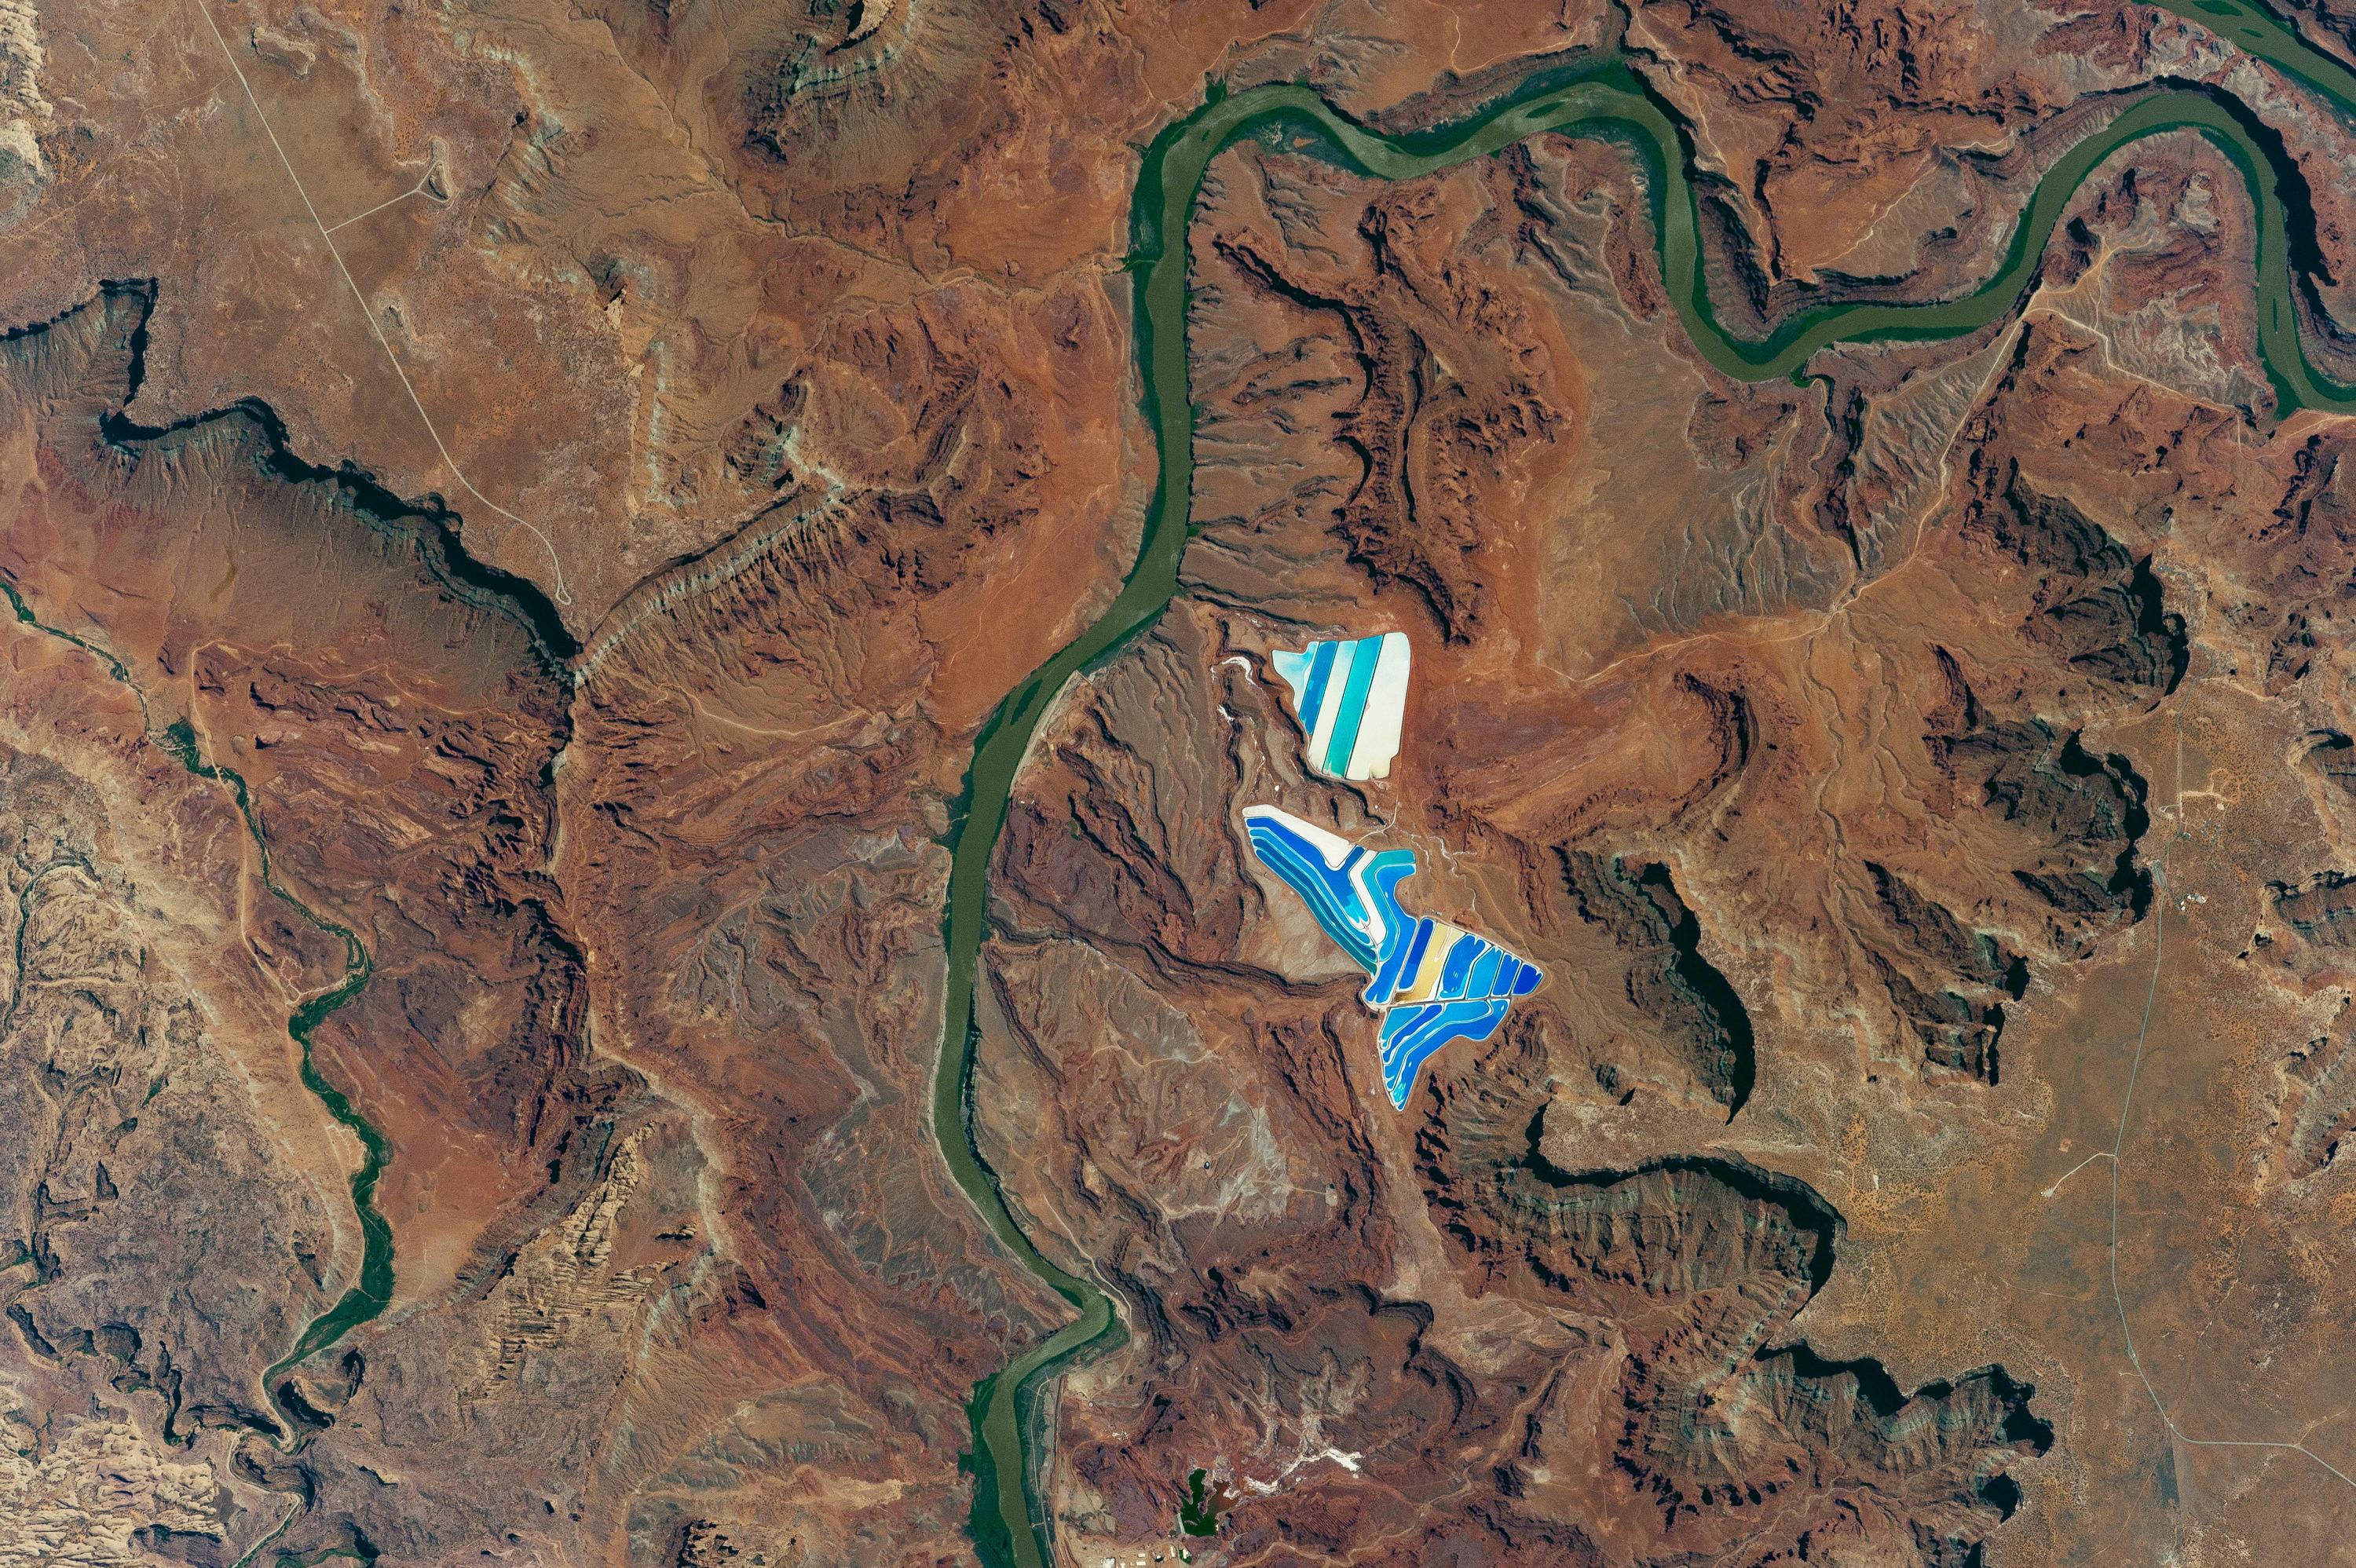 Solar Evaporation Ponds Near Moab, Utah